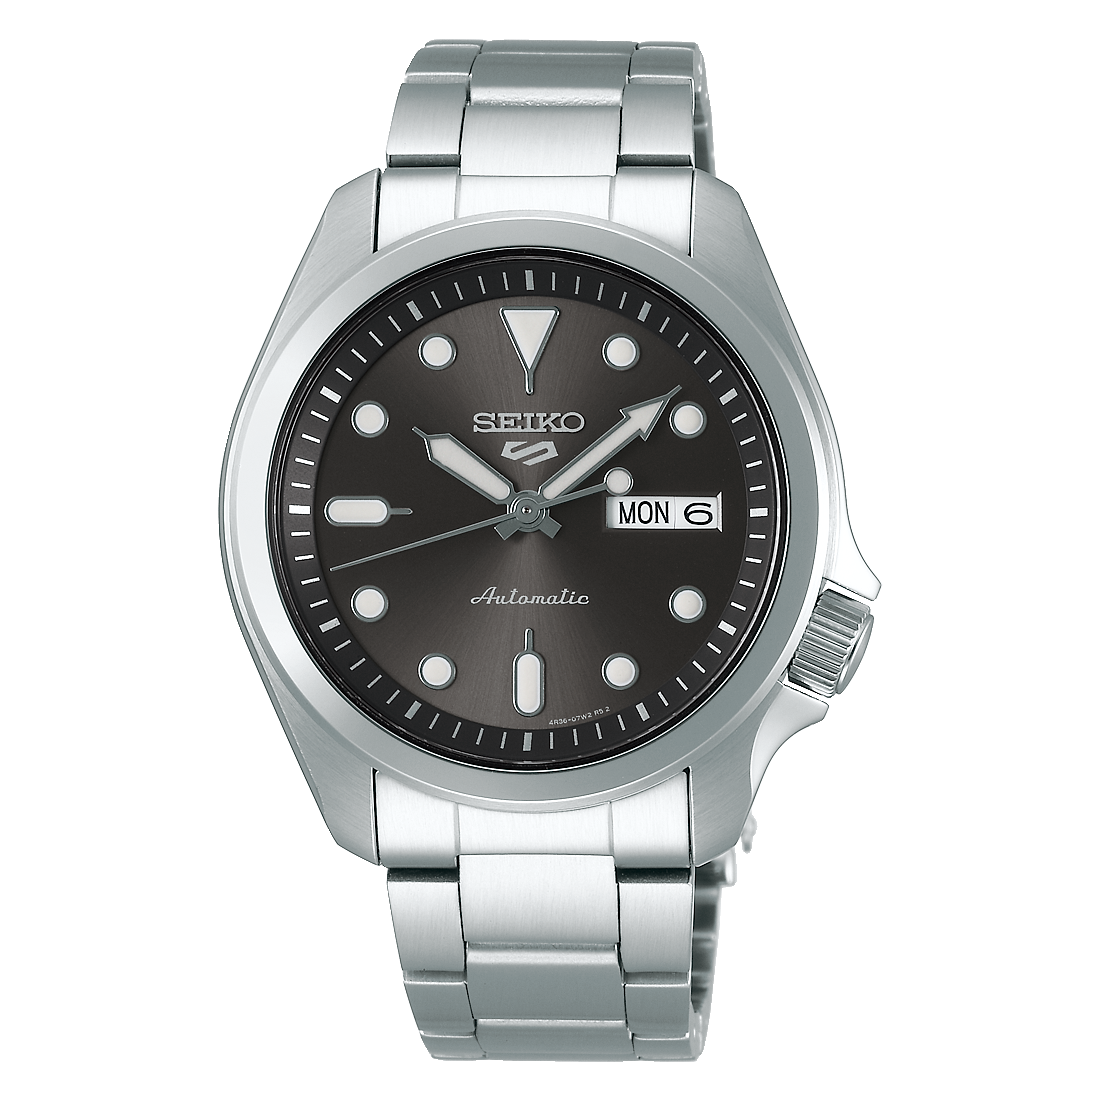 SRPE51 | Seiko Watch Corporation